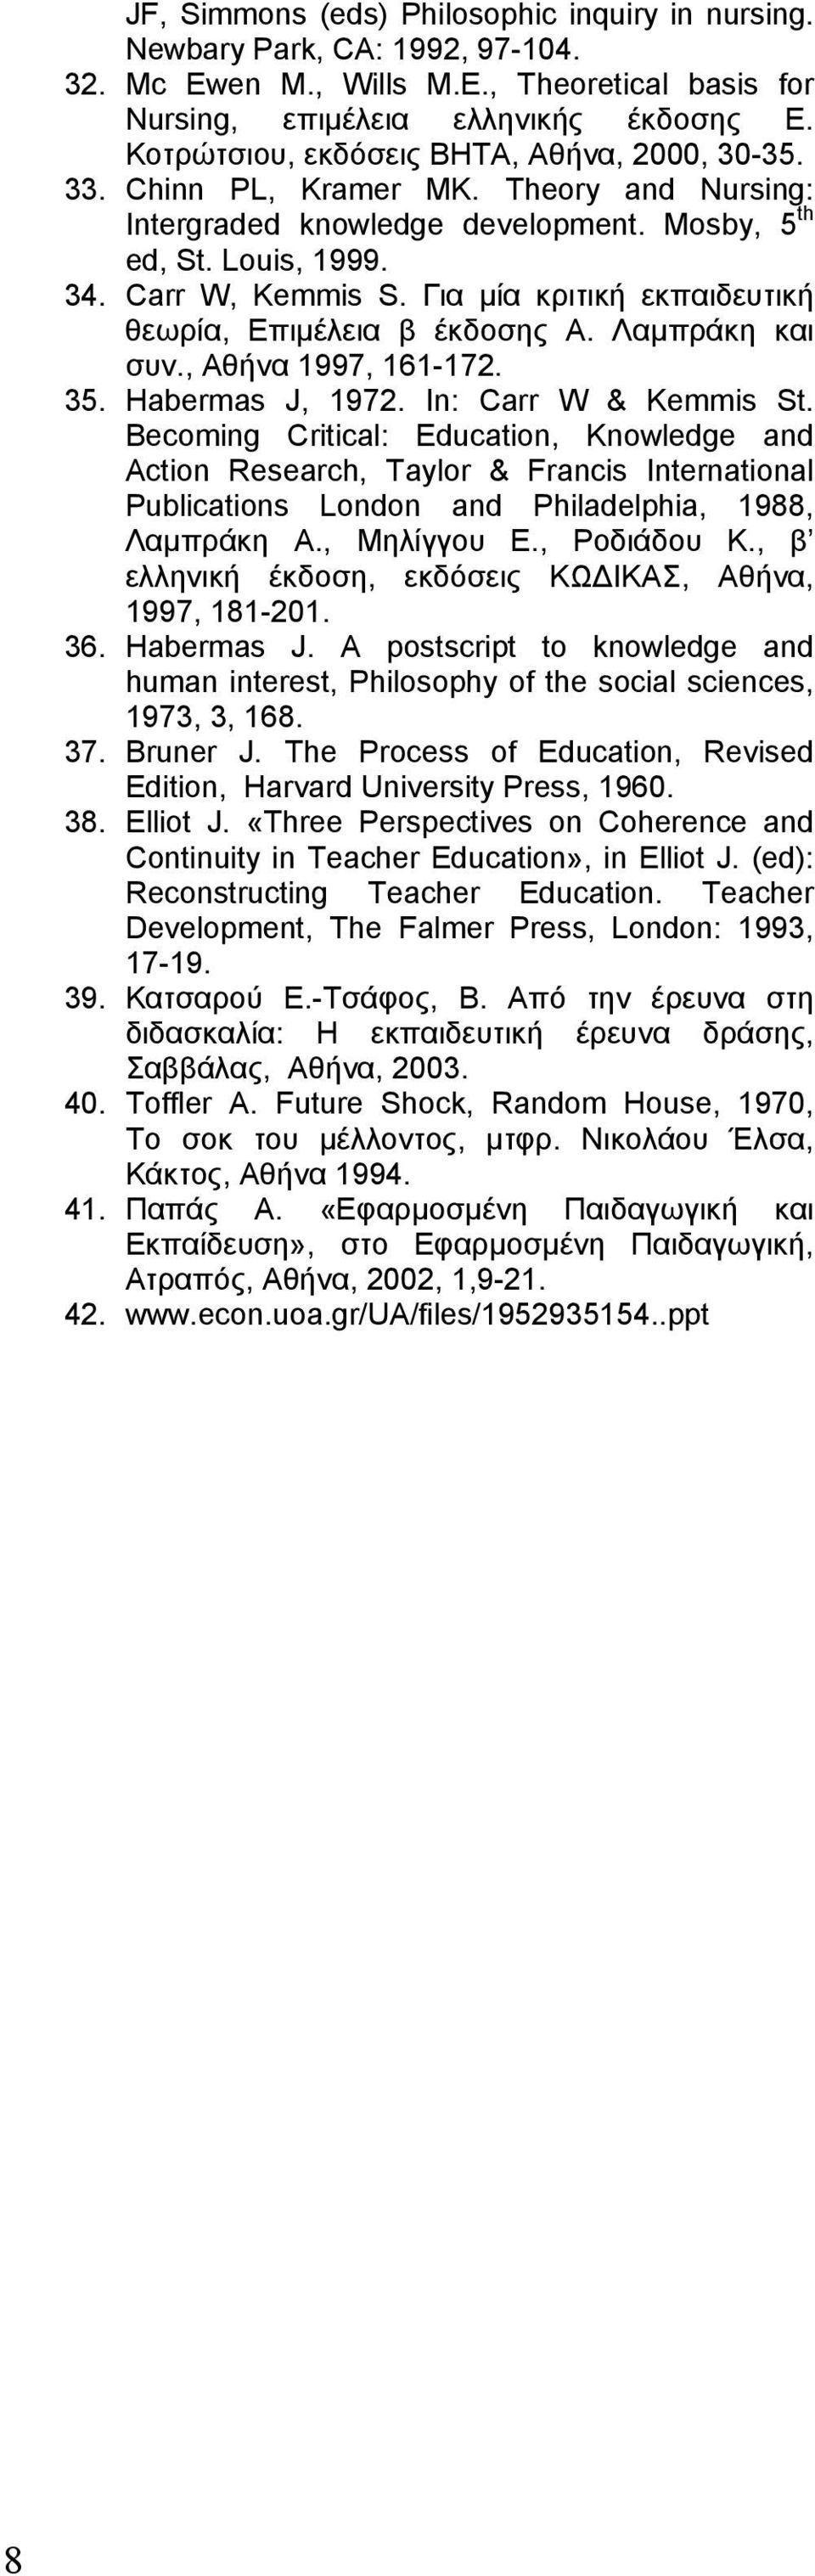 Για µία κριτική εκπαιδευτική θεωρία, Επιµέλεια β έκδοσης Α. Λαµπράκη και συν., Αθήνα 1997, 161-172. 35. Habermas J, 1972. Ιn: Carr W & Kemmis St.